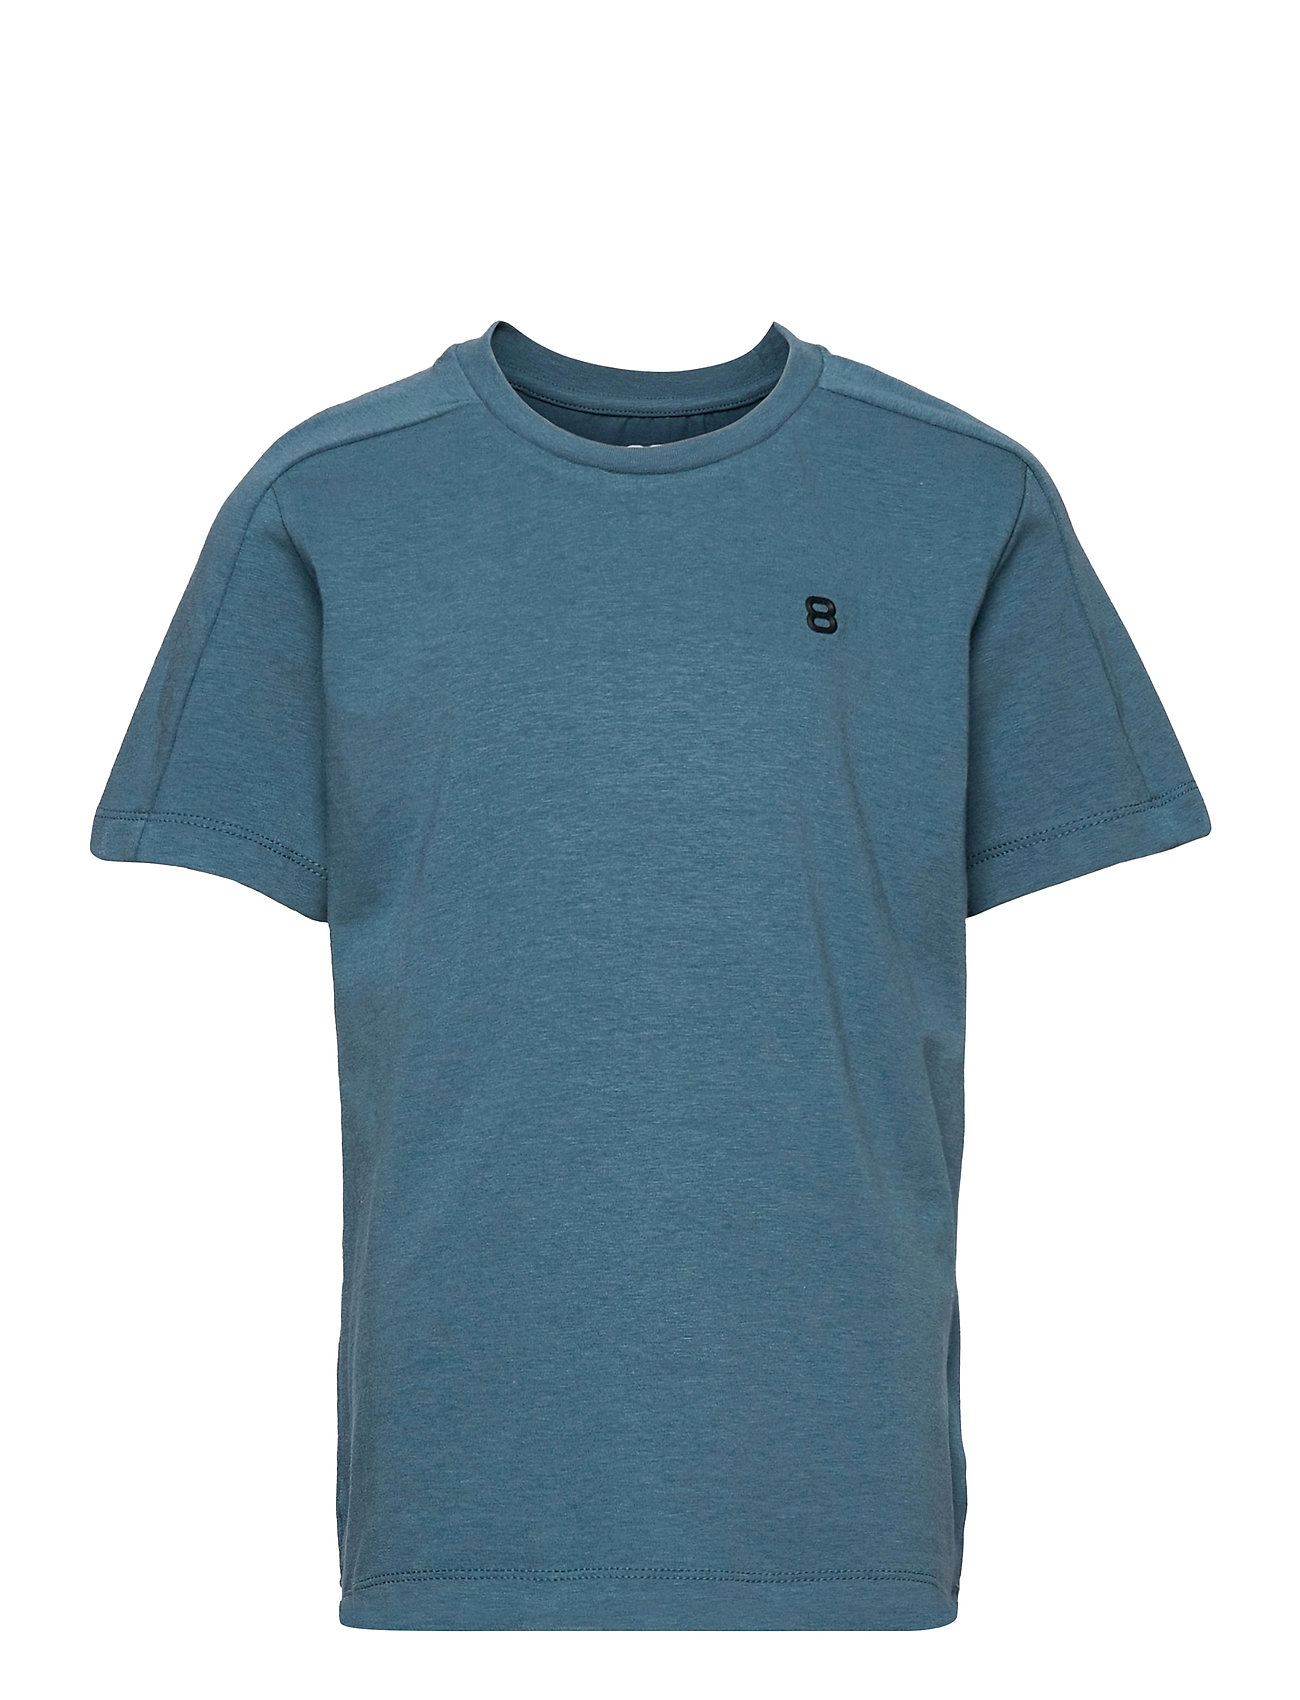 Francy Jr Tee T-shirts Short-sleeved Sininen 8848 Altitude